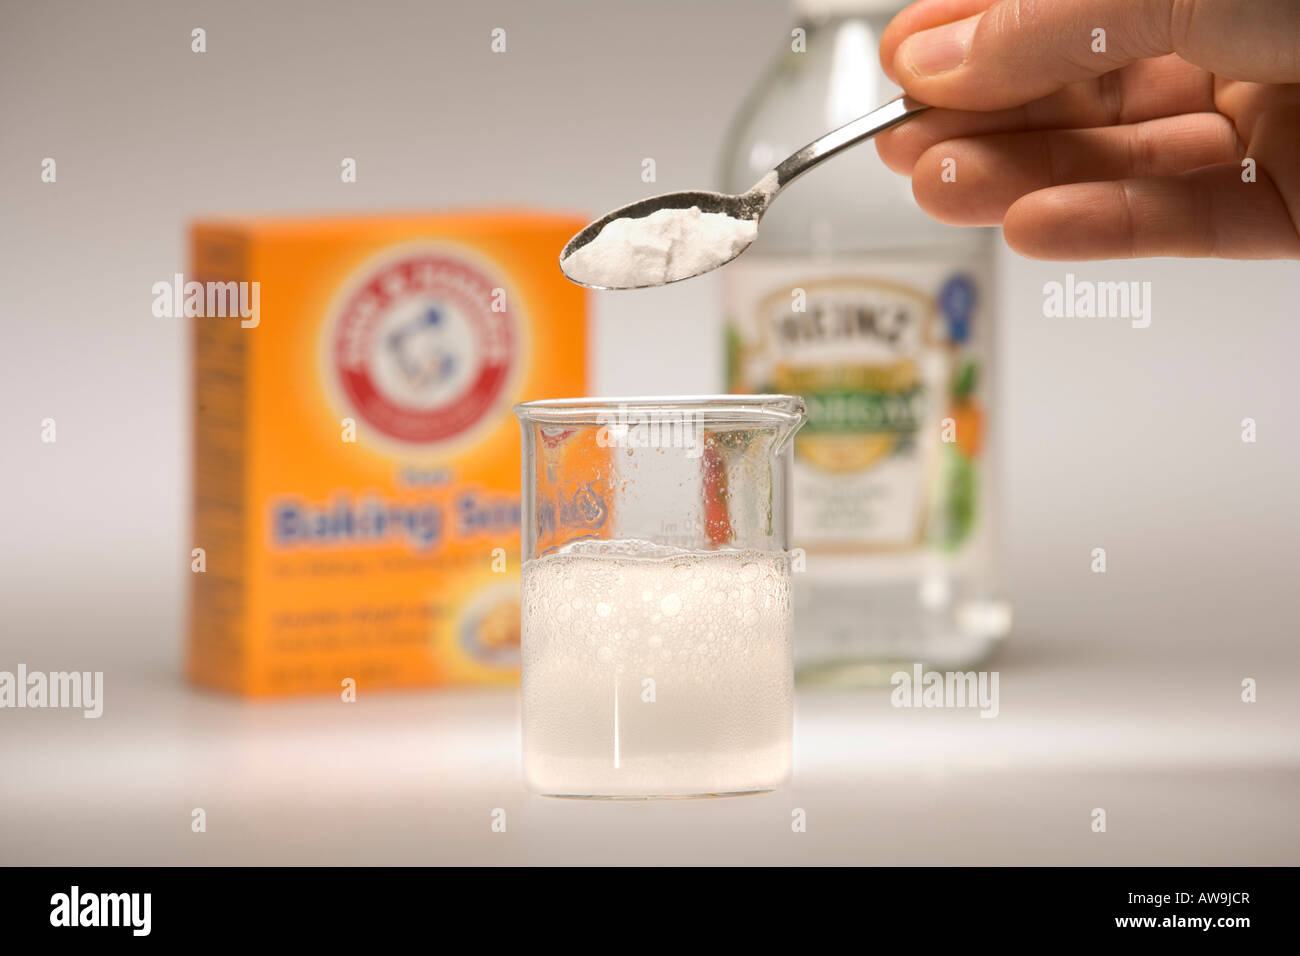 Reacción química del bicarbonato de soda (bicarbonato sódico) y el vinagre (ácido acético) Foto de stock